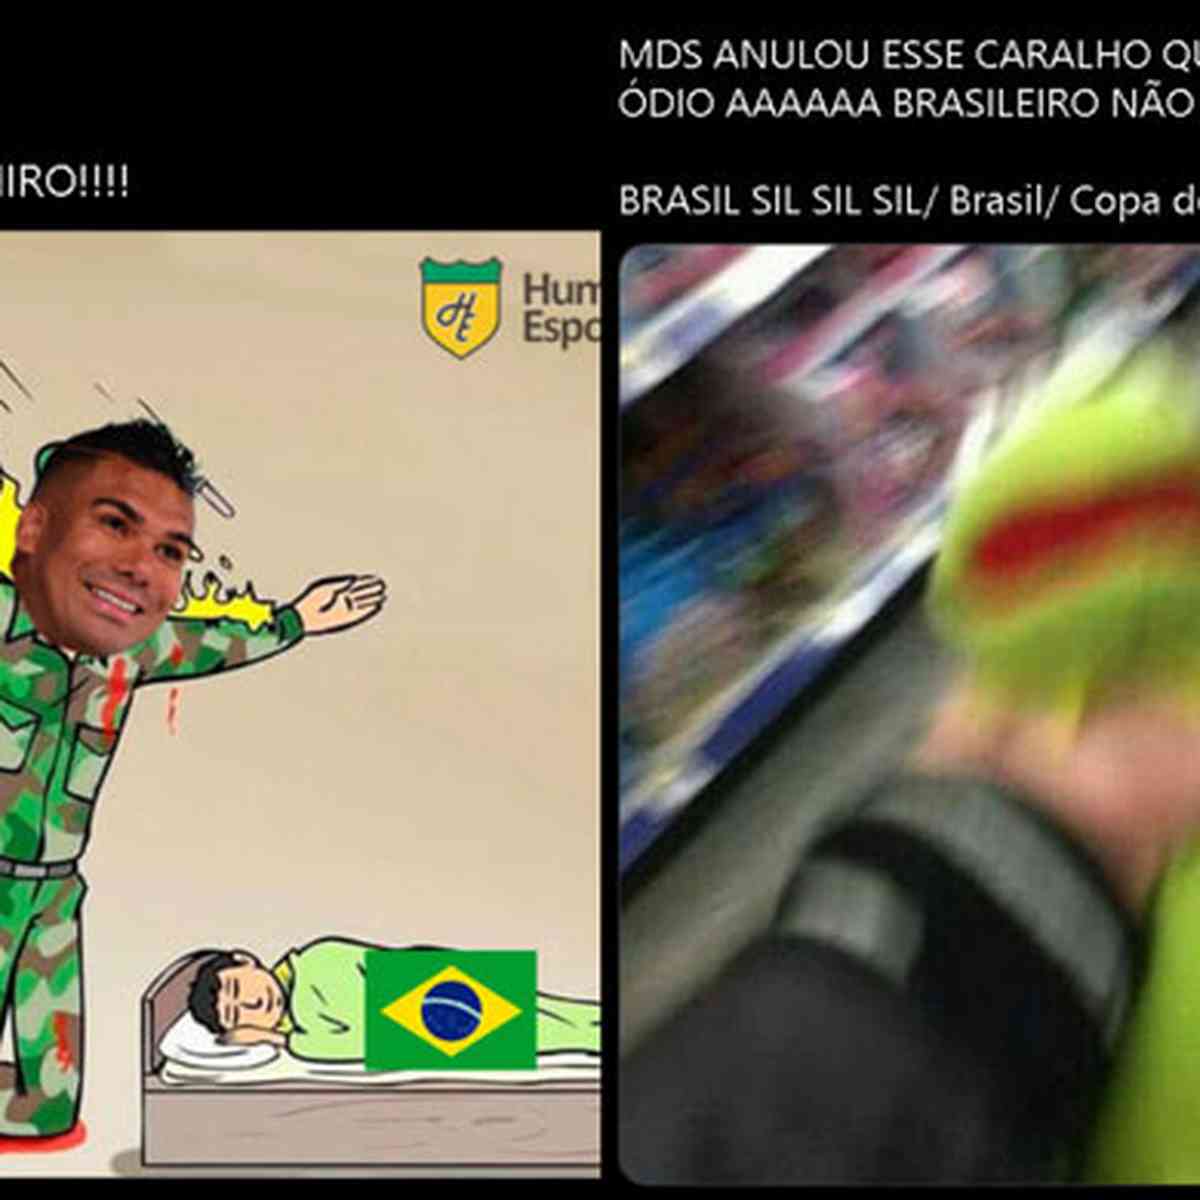 Jogo do Brasil 9 da manhã rende memes na internet; confira